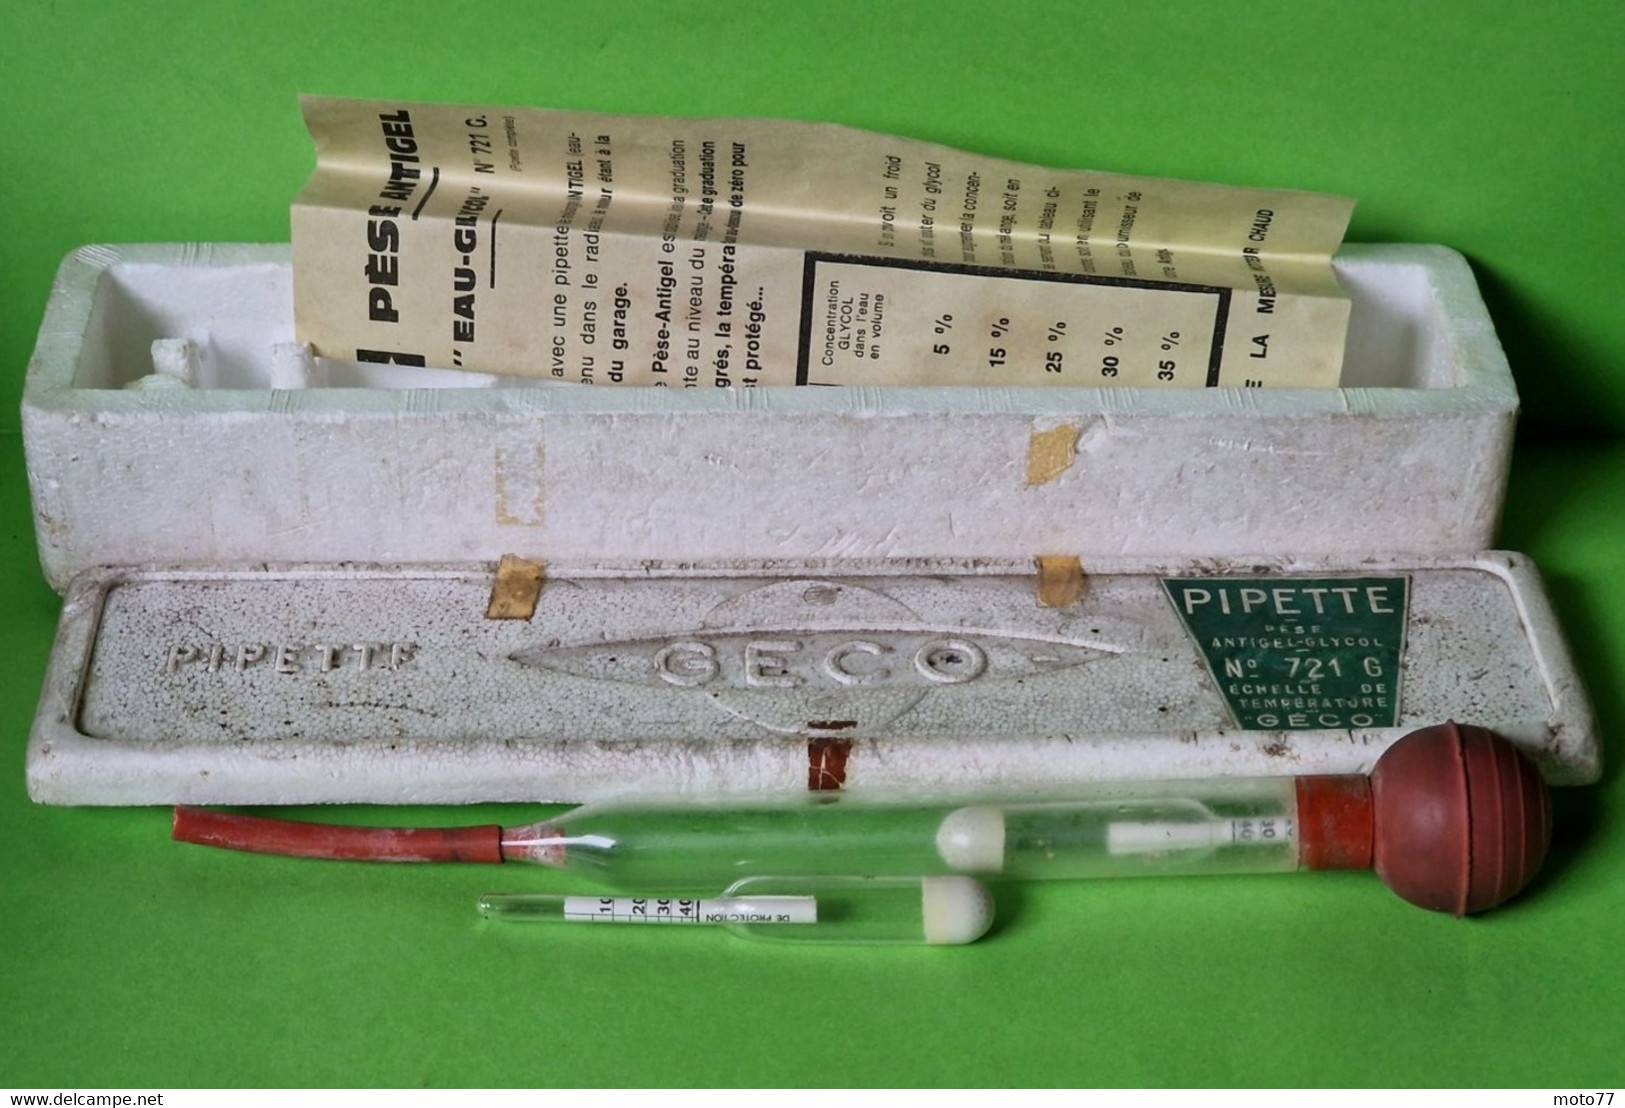 Ancien OUTIL Spécial GECO - Pipette PÈSE Antigel Batterie Véhicules - Verre Plastique -" Laissé Dans Son Jus "-vers 1960 - Other Apparatus